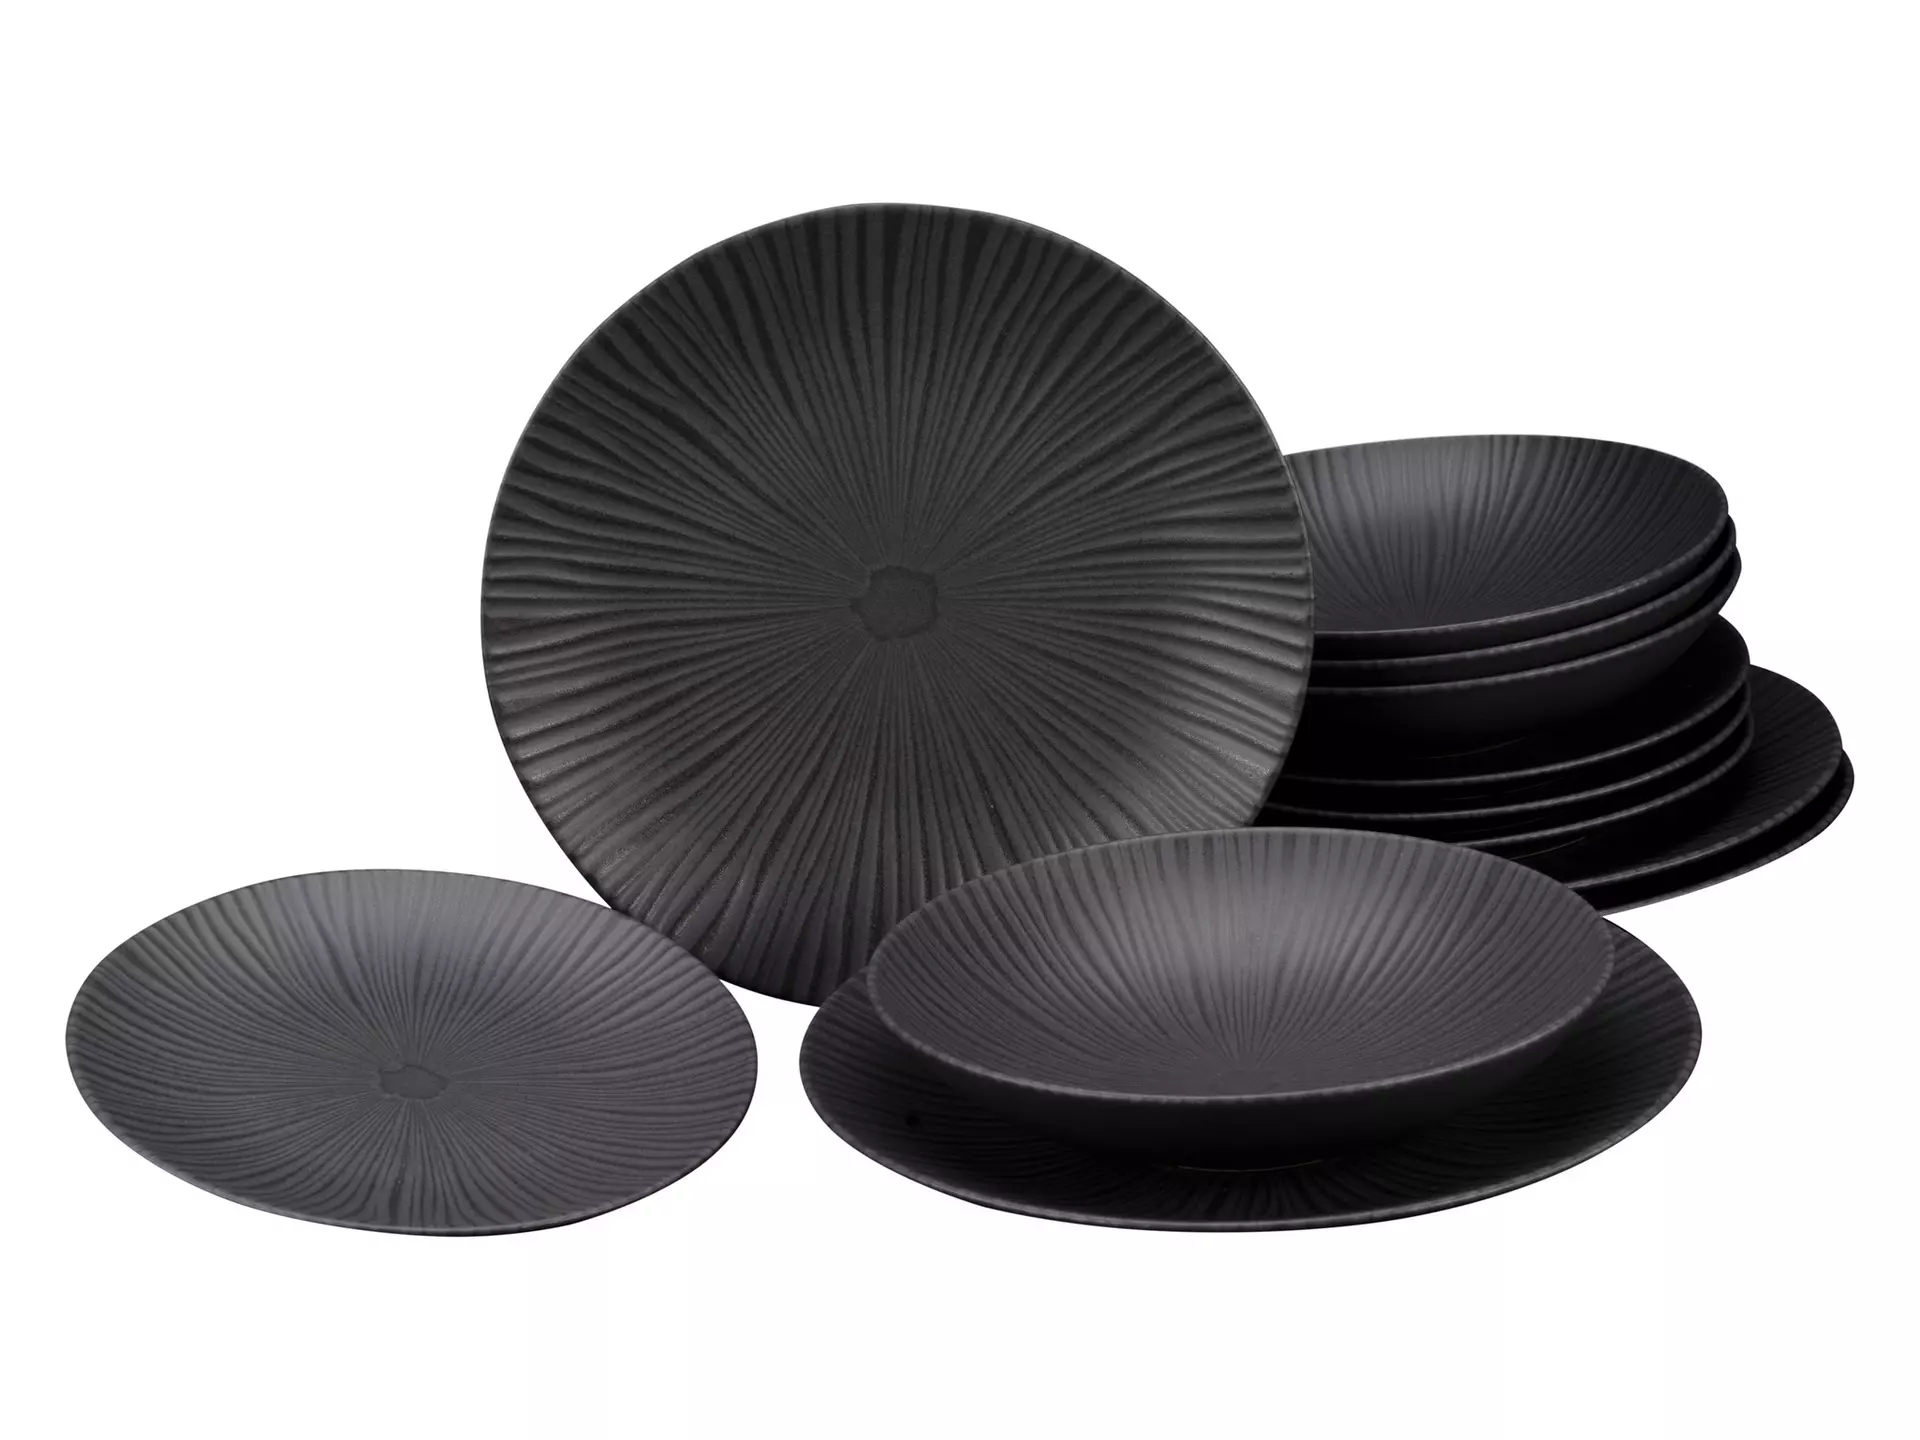 Tafel-Service Keramik-Geschirr in Schwarz kaufen